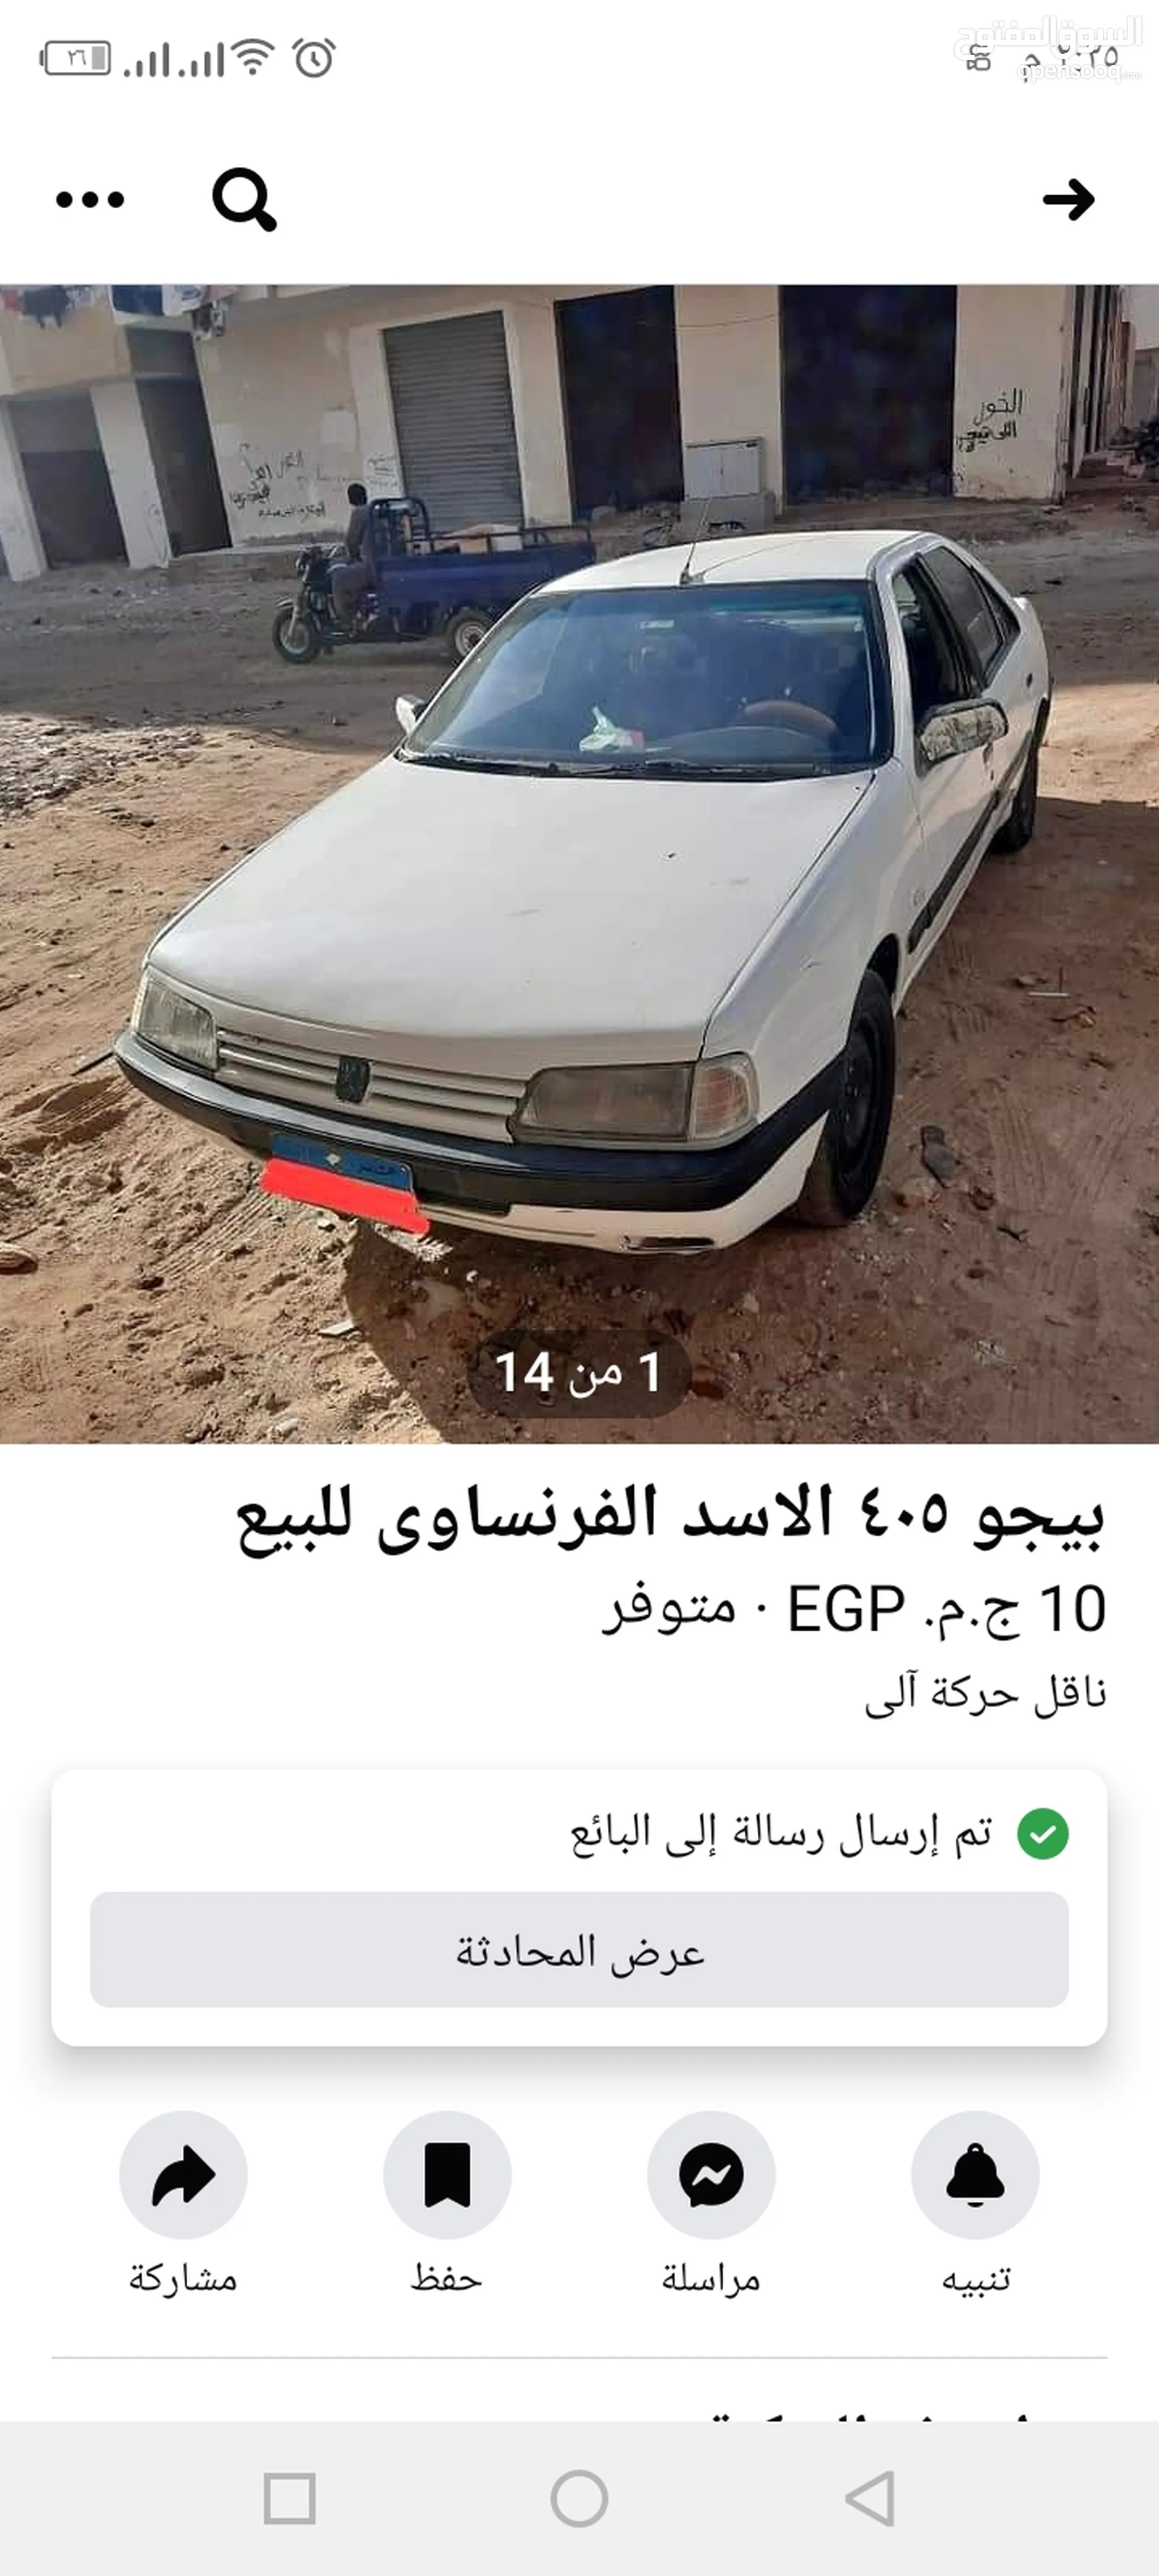 بيجو 405 للبيع في مصر : مستعملة وجديدة : بيجو 405 بارخص سعر | السوق المفتوح